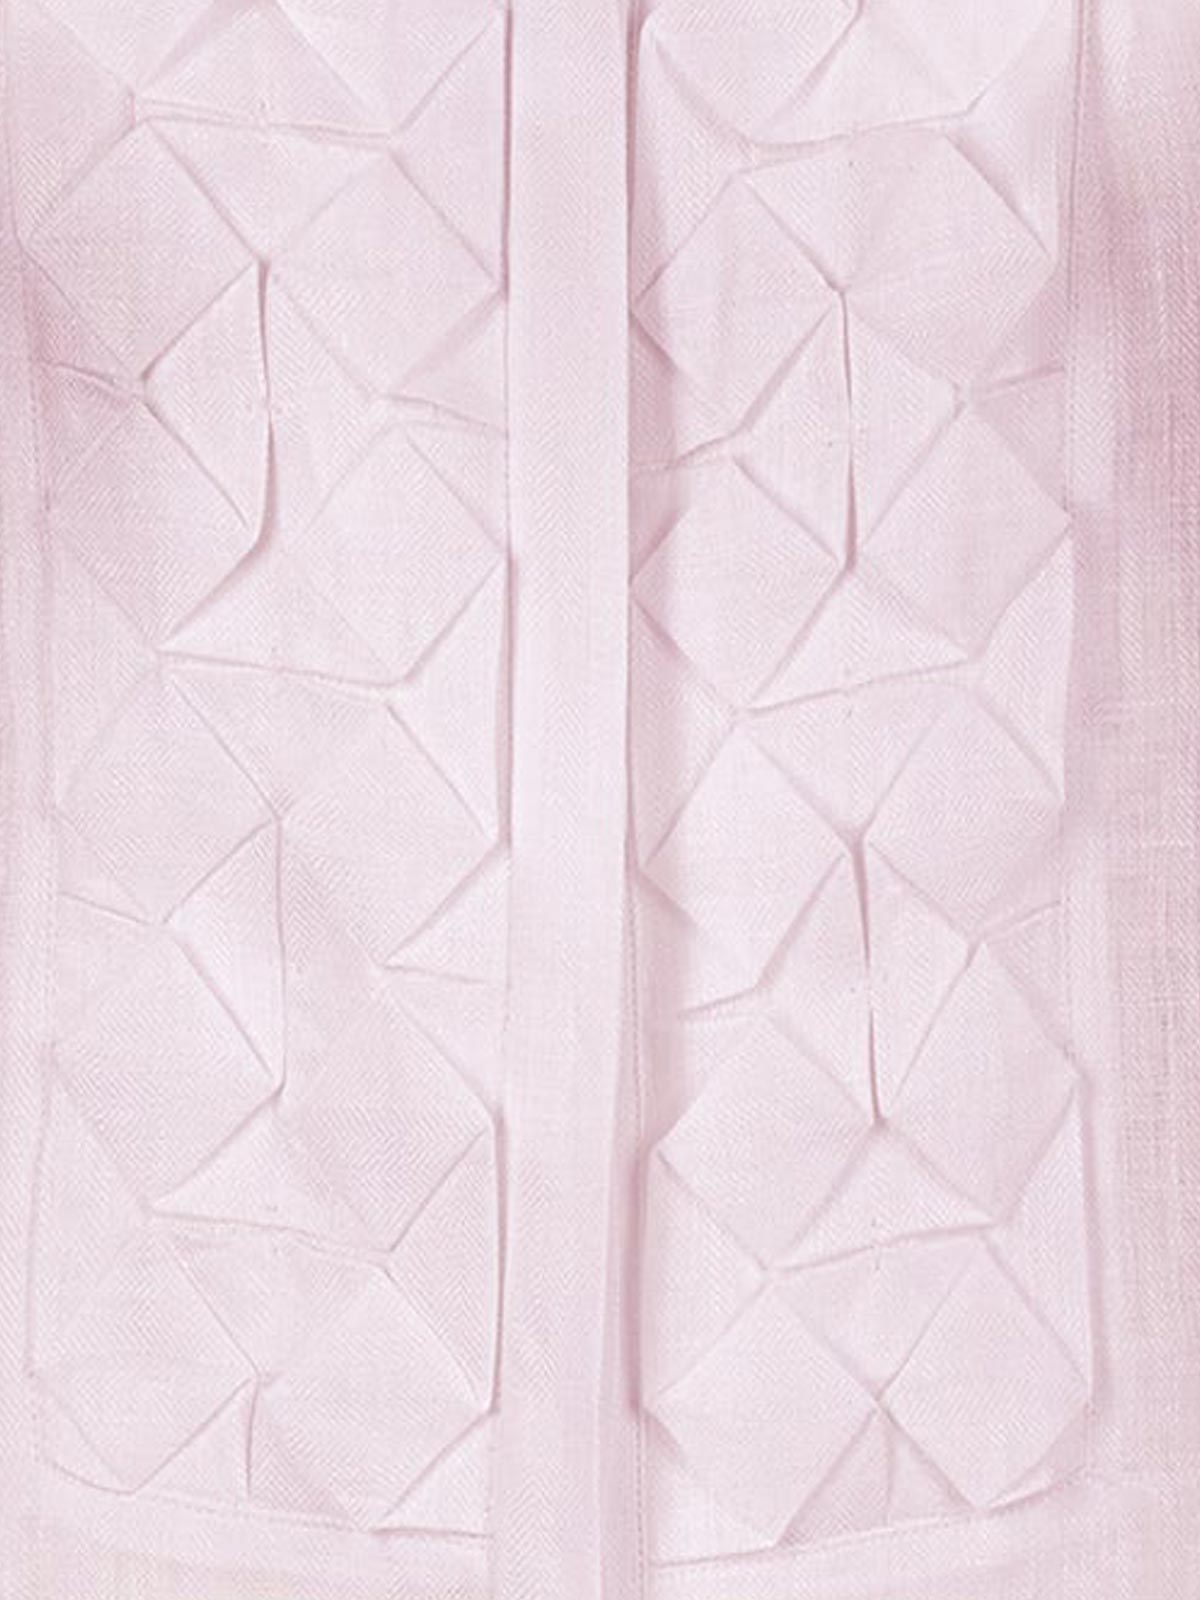 Camicia Nada 100% Capri pink linen shirt detail